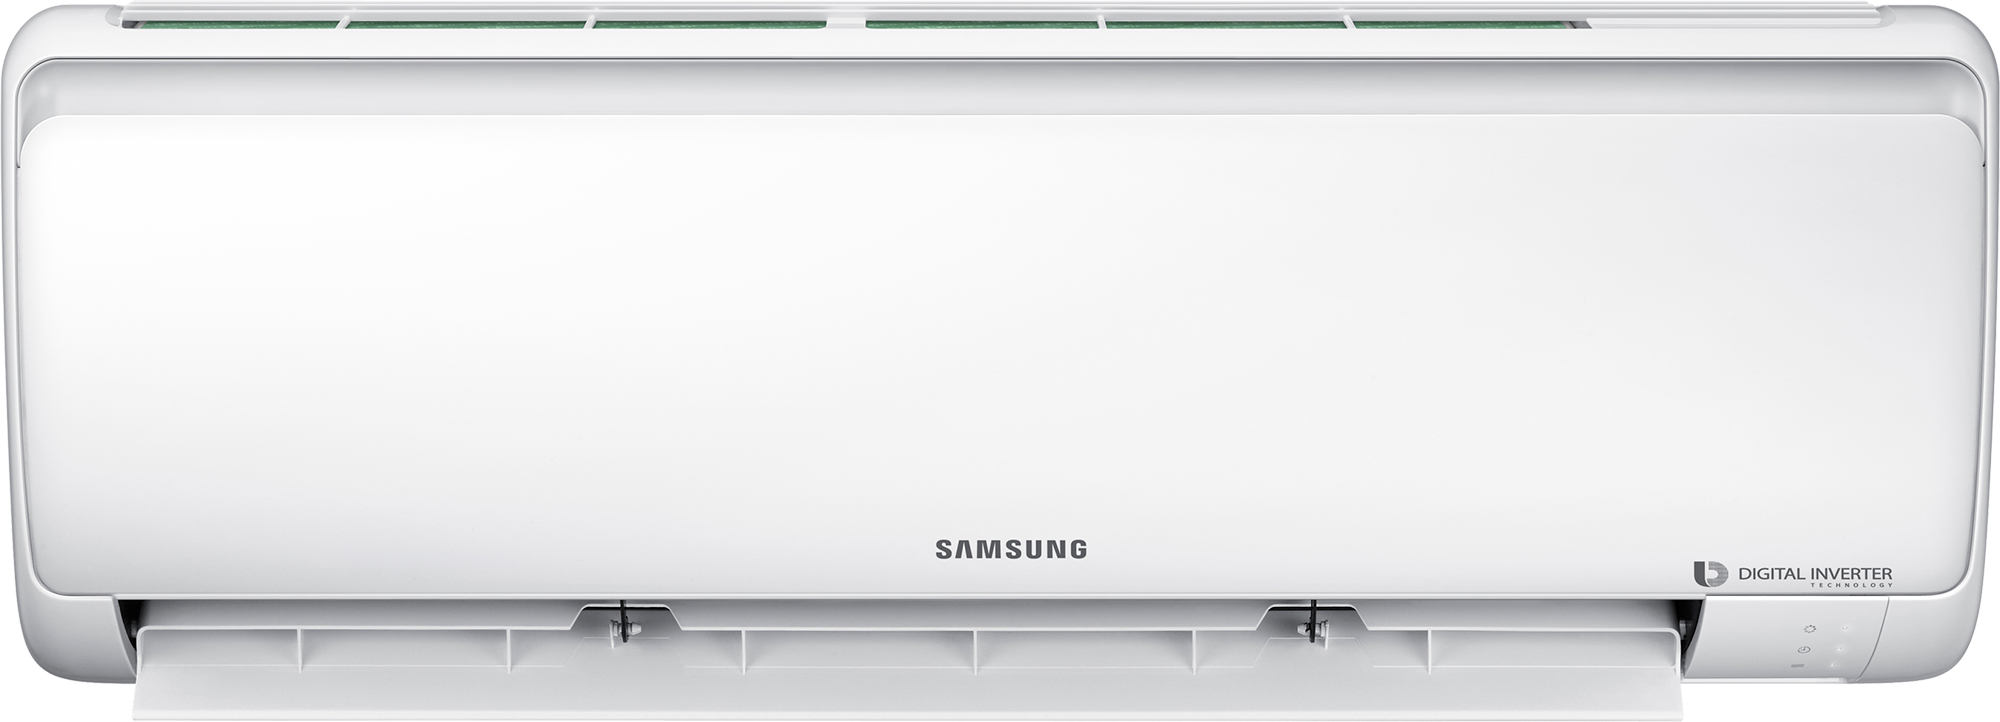 Кондиціонер спліт-система Samsung AR09RSFPAWQNER / AR09RSFPAWQXER ціна 0.00 грн - фотографія 2